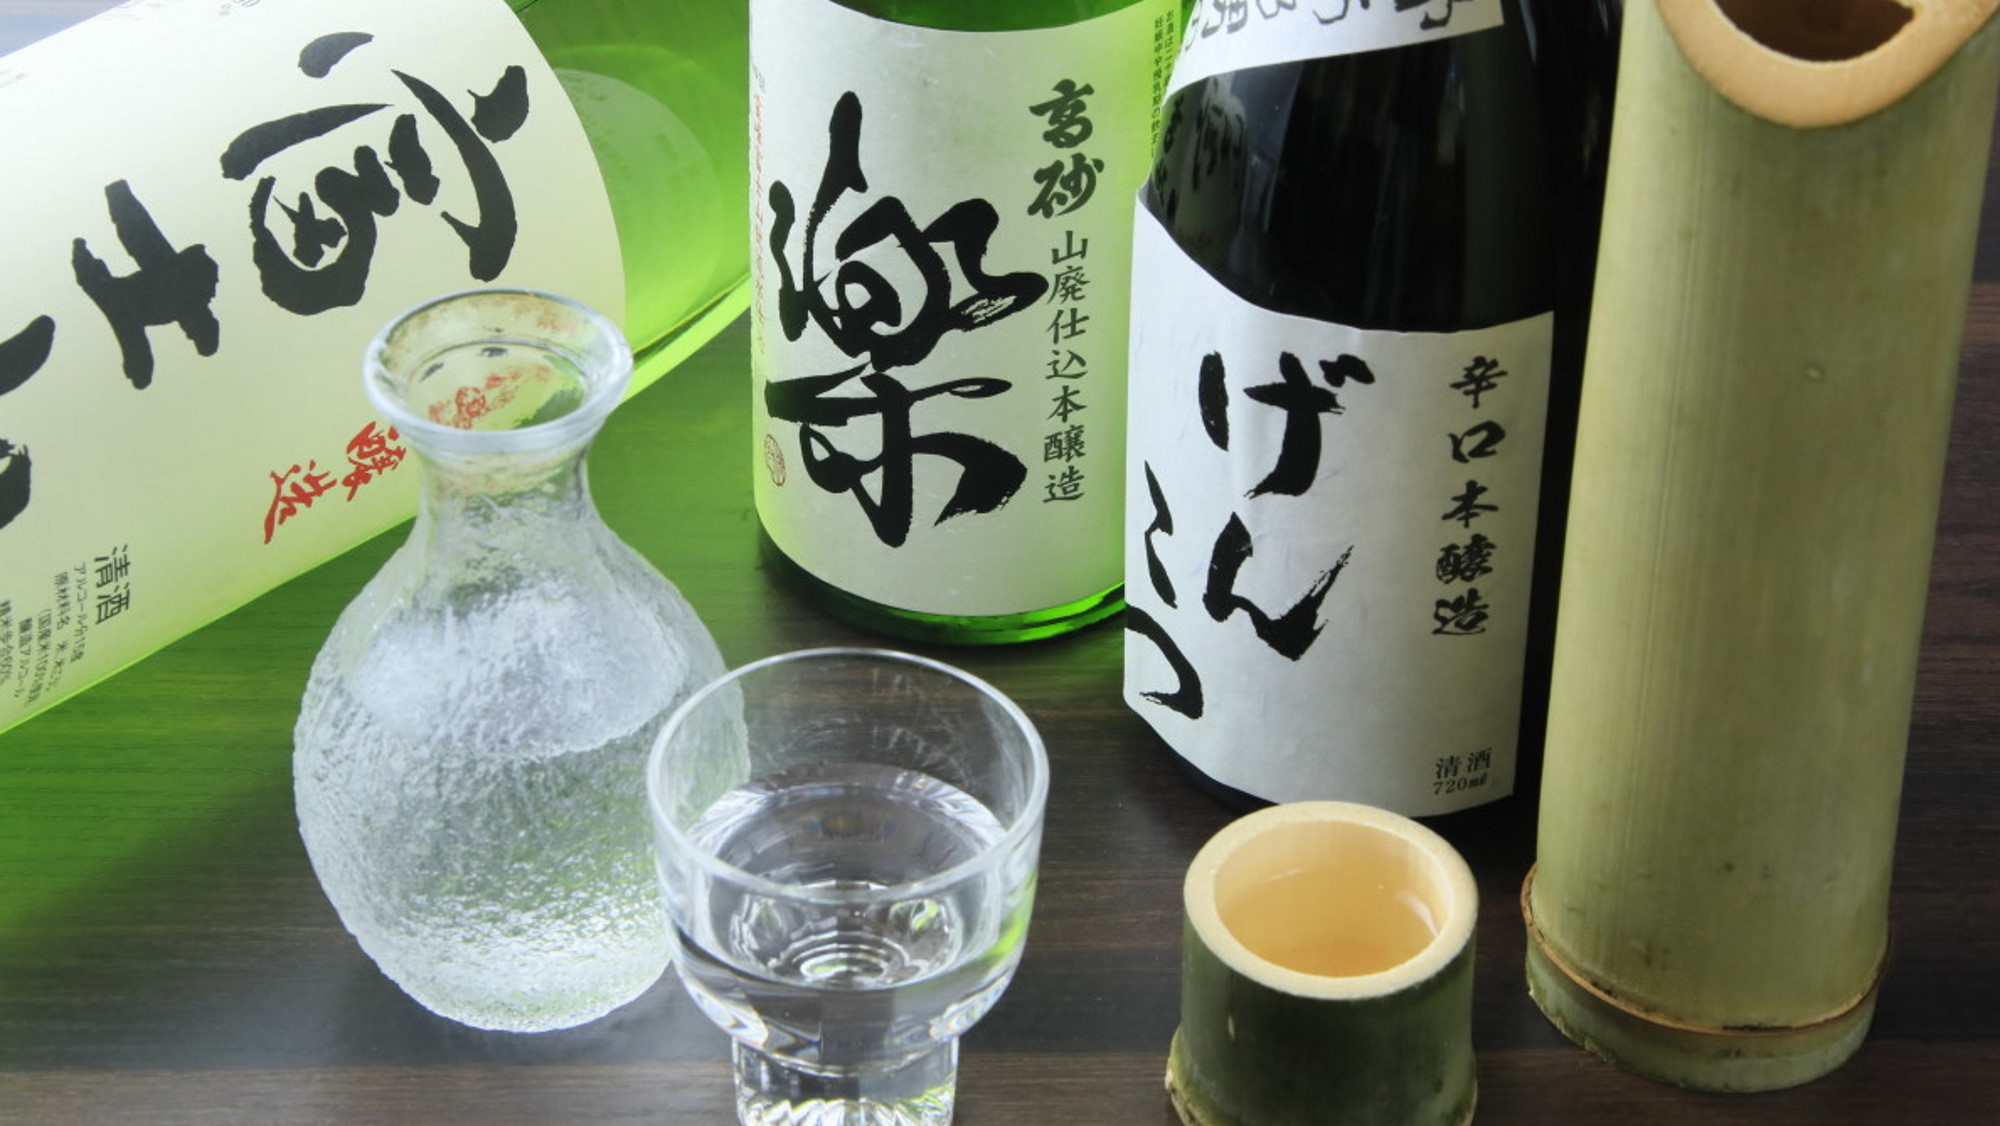 会席には日本酒が良く合う。おすすめは「楽」や「げんこつ」、熱燗なら「富士山」はいかがでしょう？